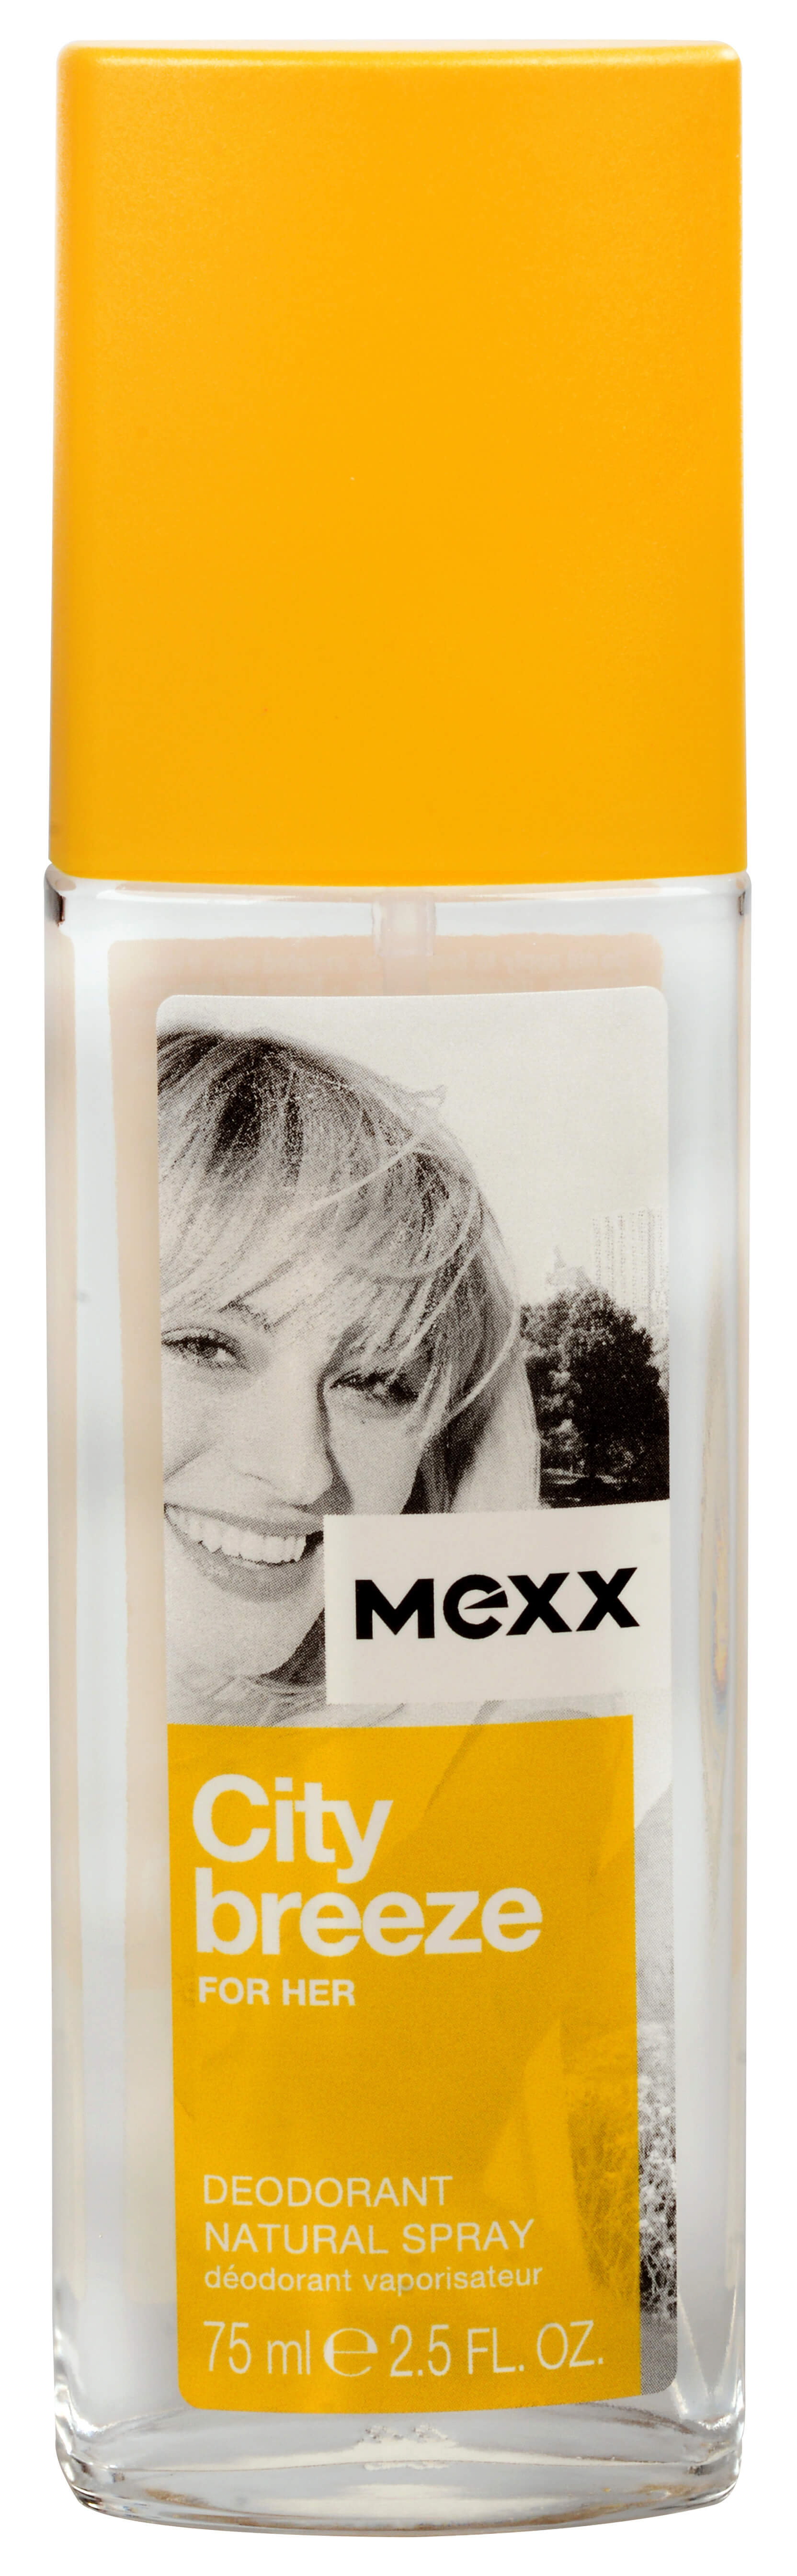 Mexx City Breeze For Her - deodorant s rozprašovačem 75 ml